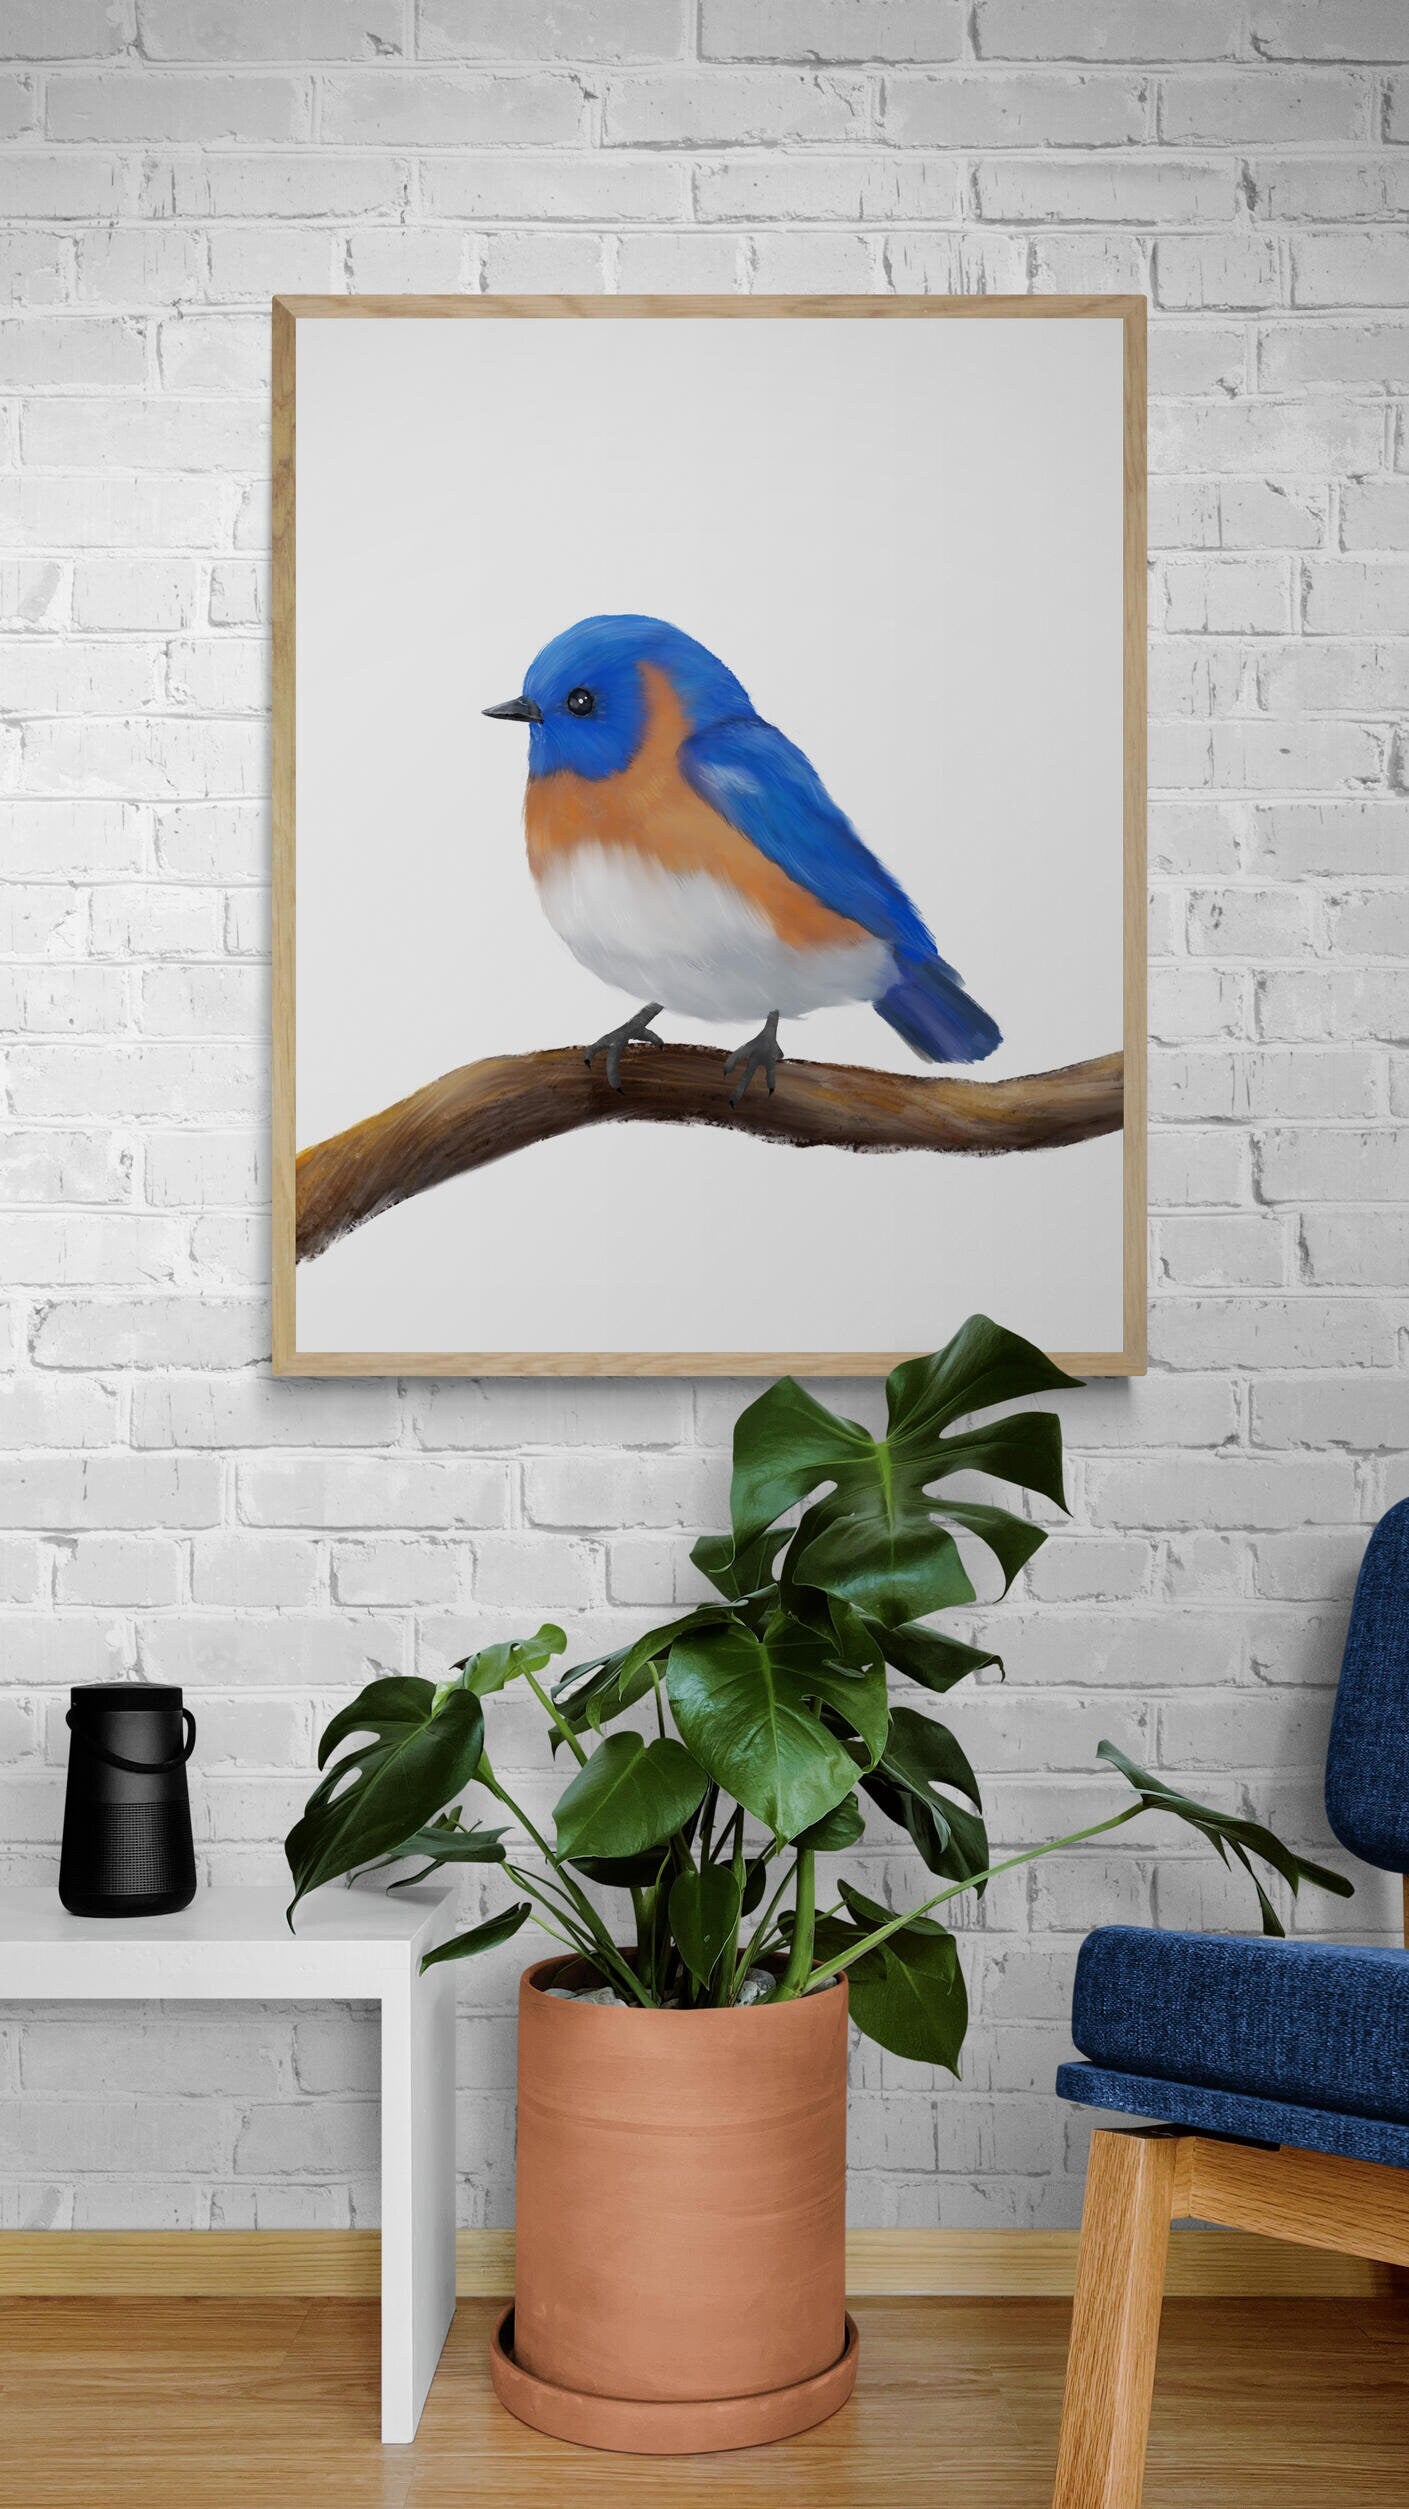 Eastern Bluebird Print, Blue Bird Painting, Holiday Print, Living Room Wall Art, Bird Print Gift, Bird Watcher Gift, Bird Lover Art